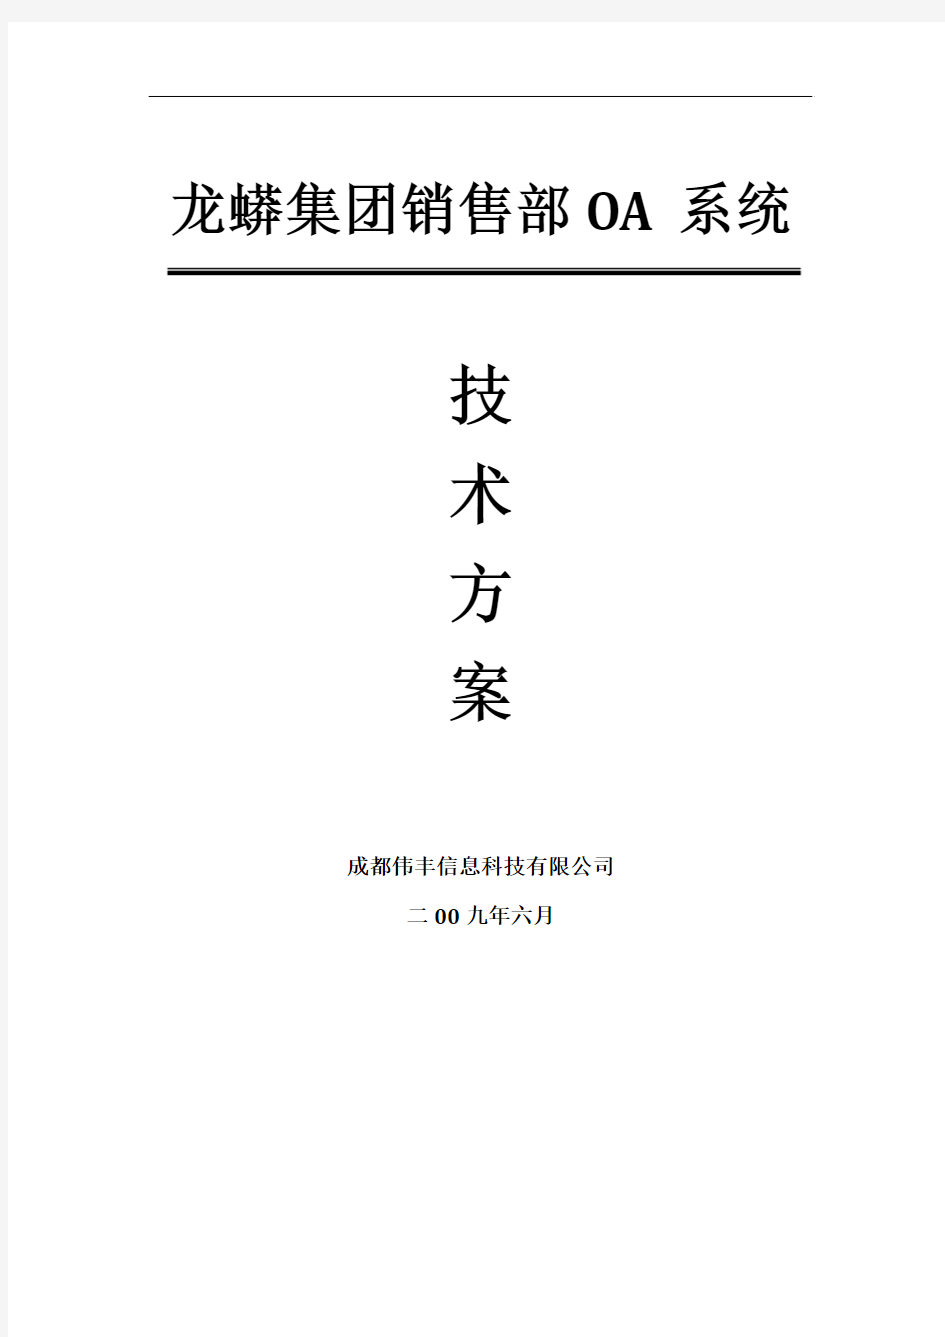 龙蟒集团销售部OA系统技术方案书